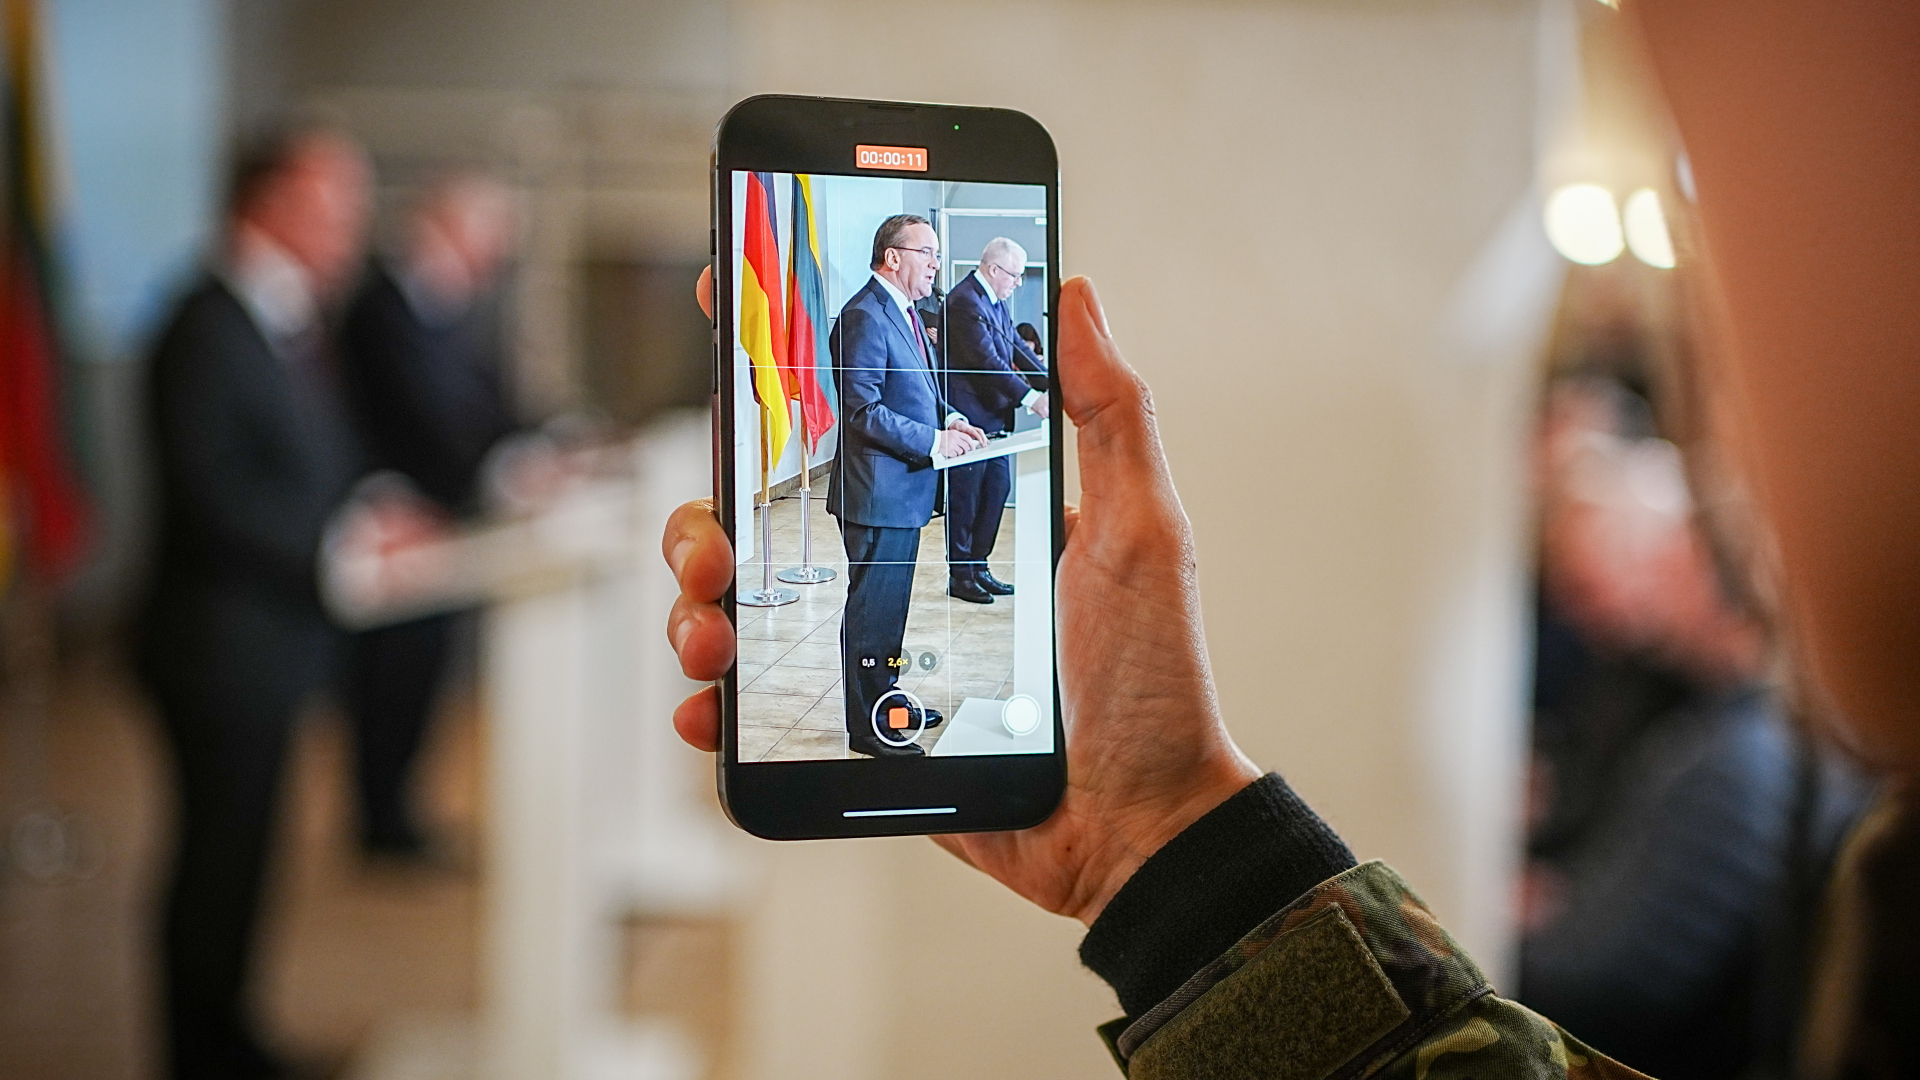 Boris Pistorius und Arvydas Anusauskas sind auf einem Smartphone während ihrer Pressekonferenz zu sehen.  | dpa